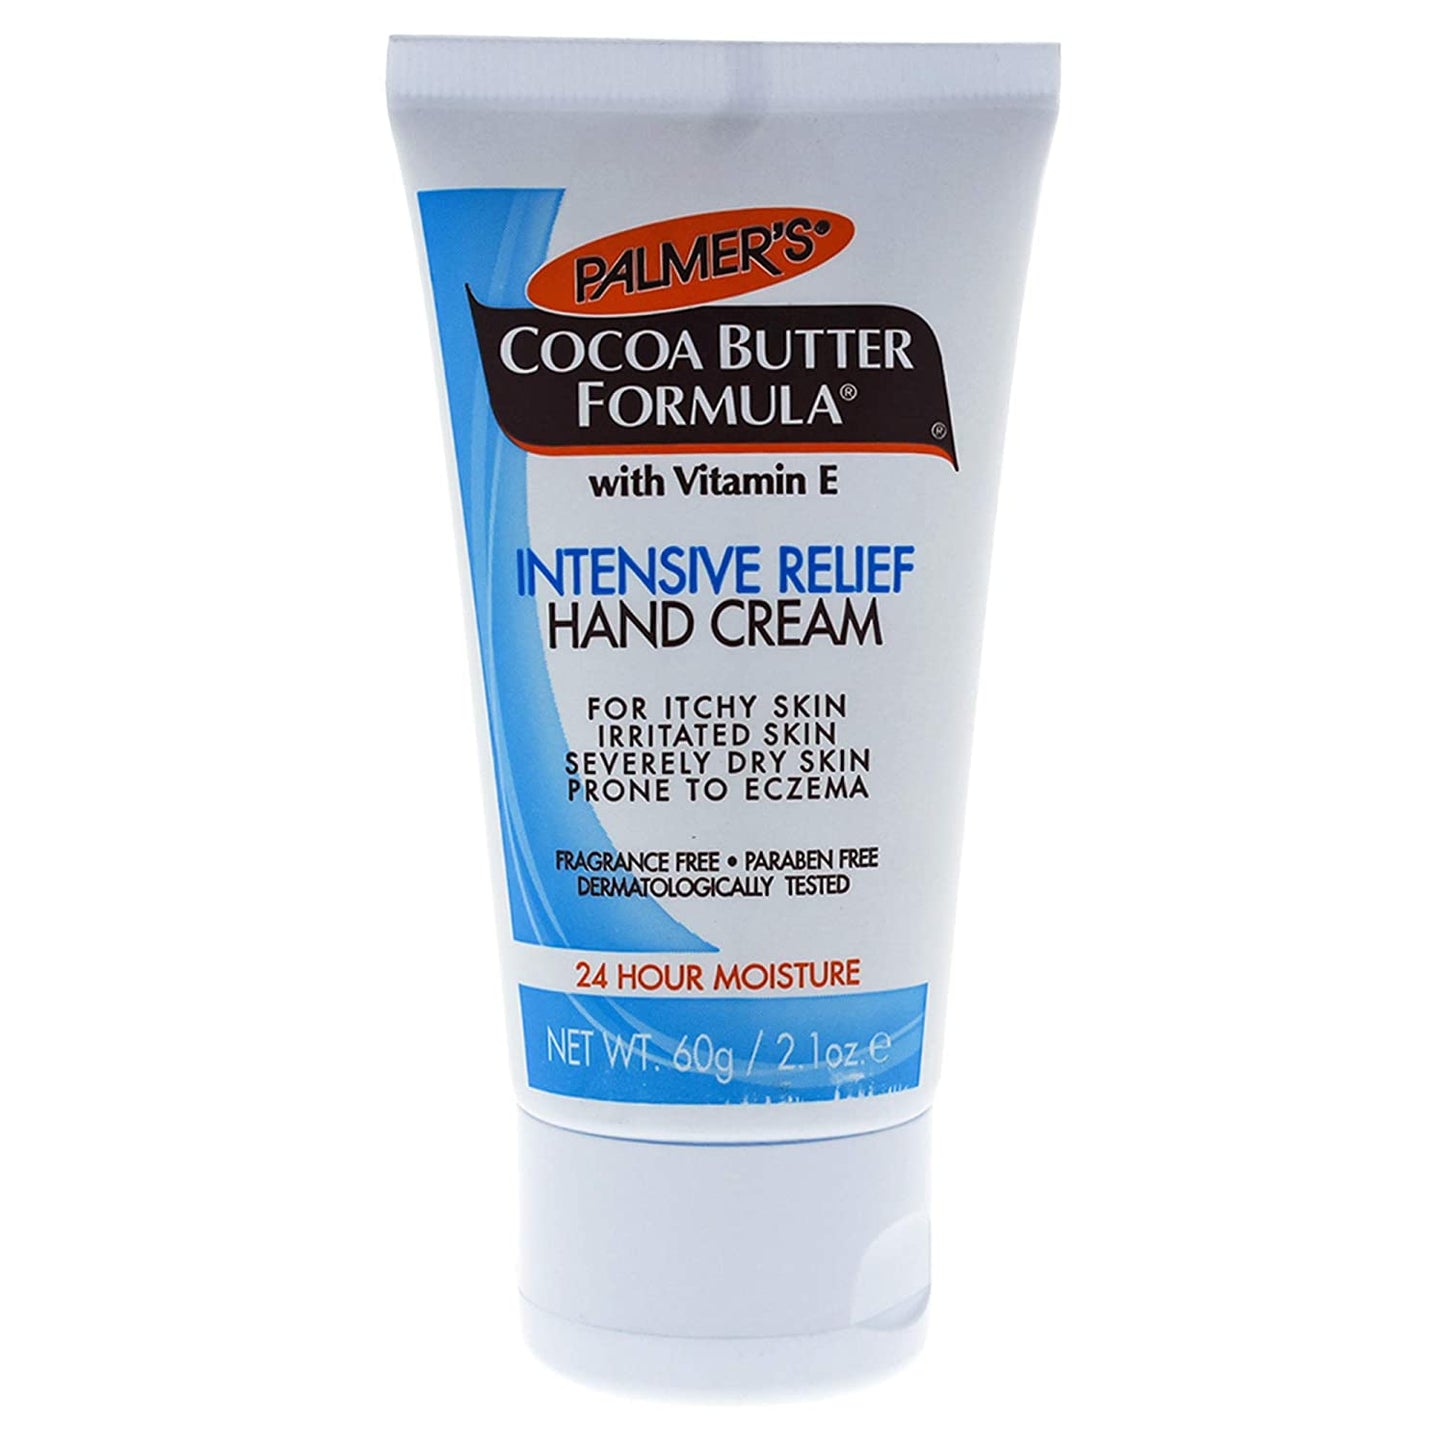 Palmer's Cocoa Butter Formula Intensive Relief Hand Cream - 2.10oz/6pk